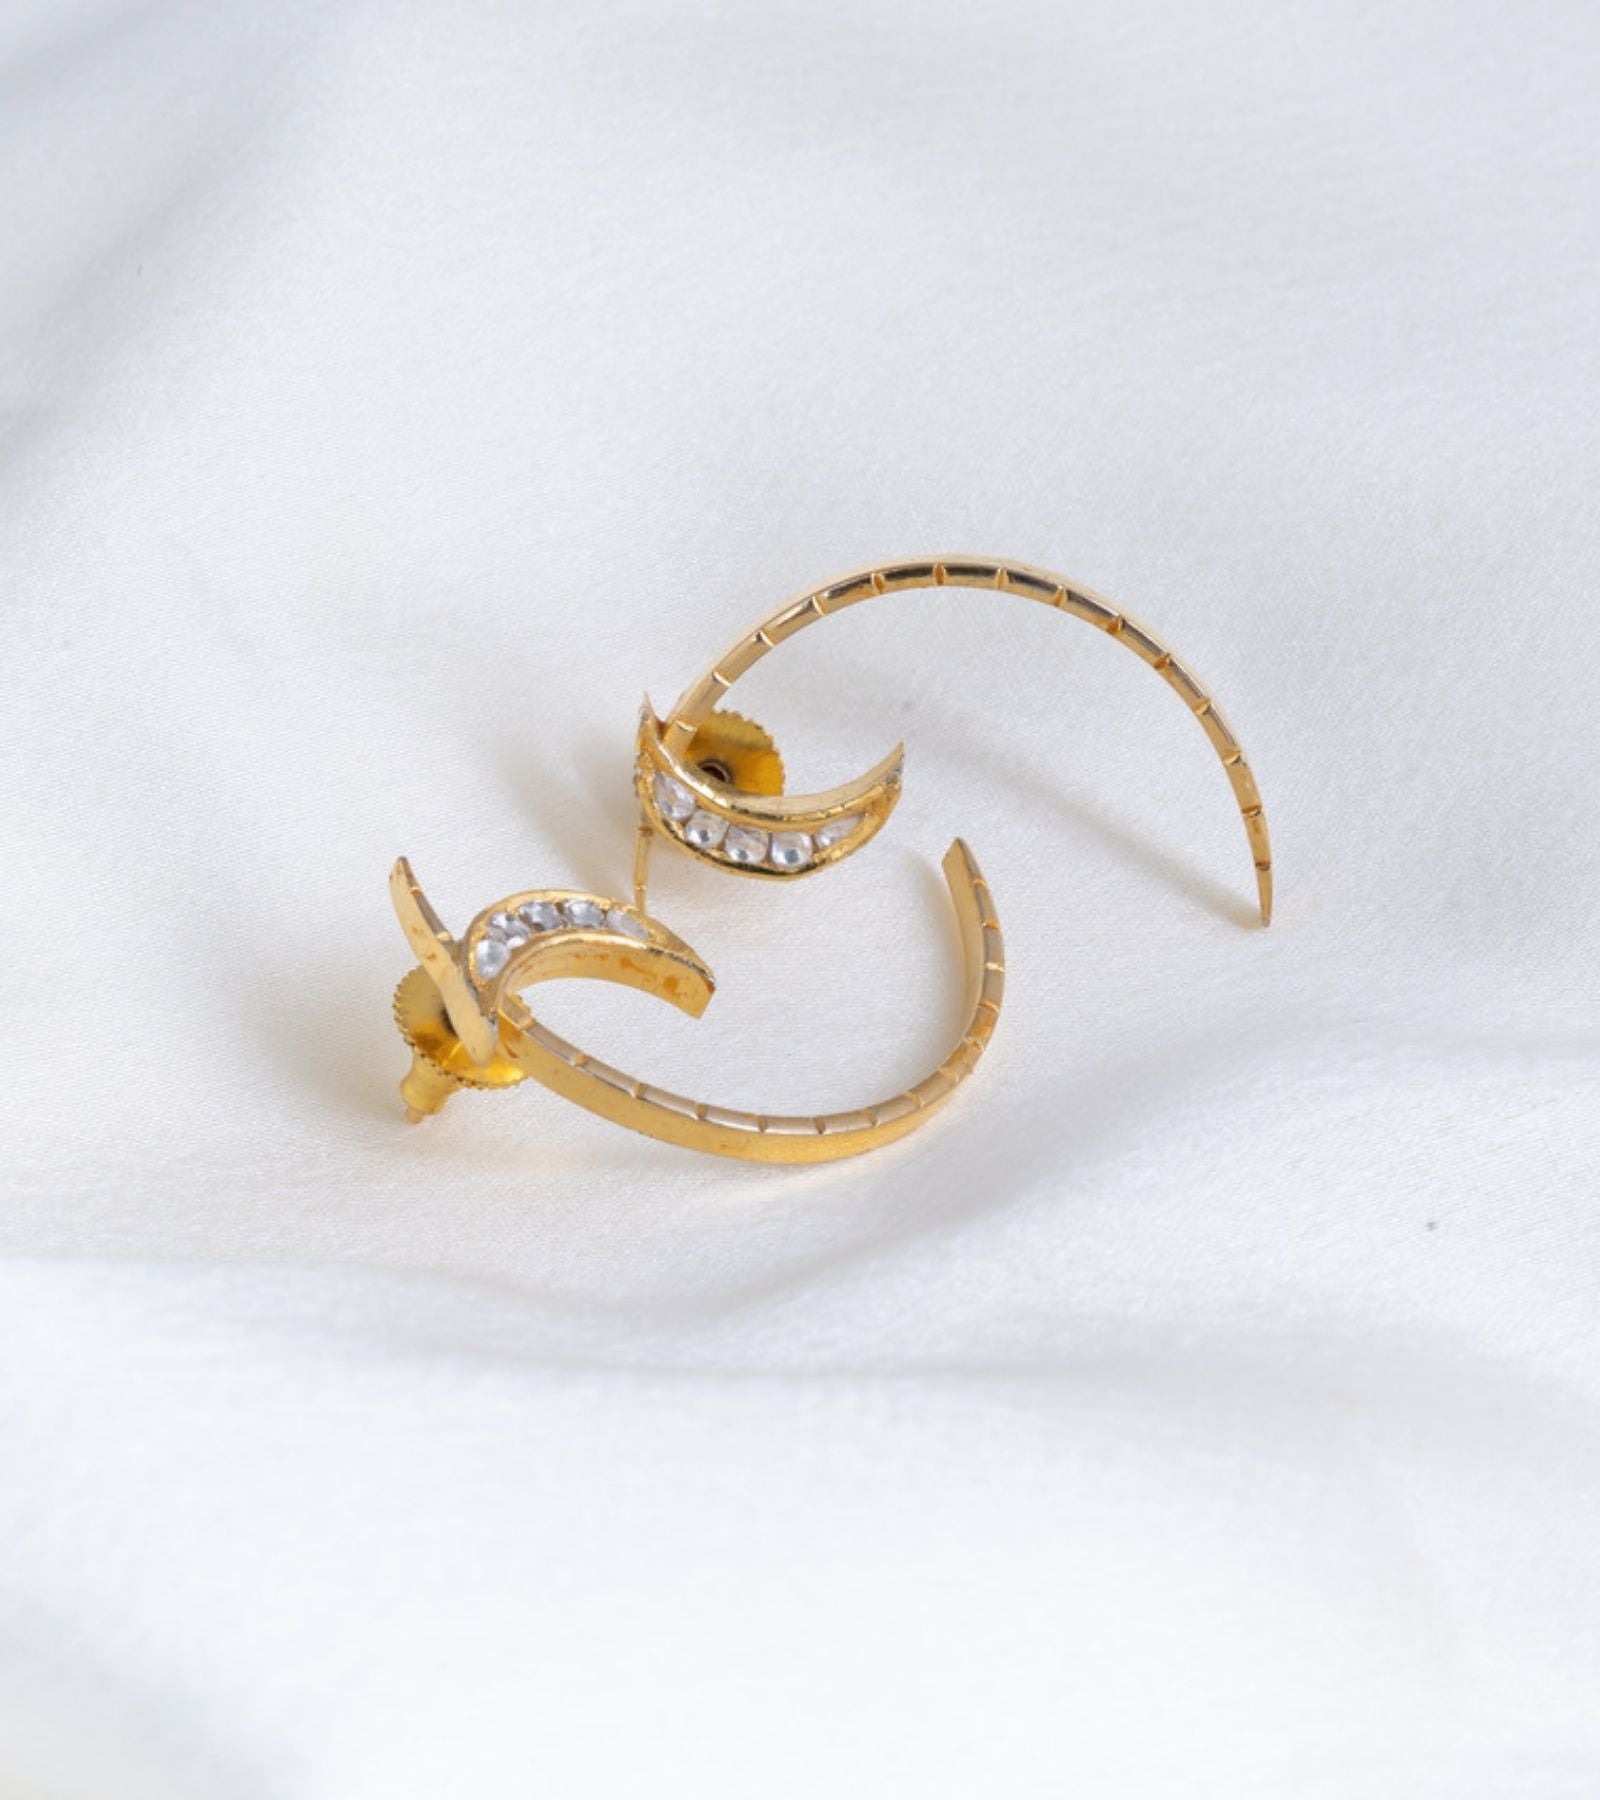 Statement Earrings by UNCUT Jewelry